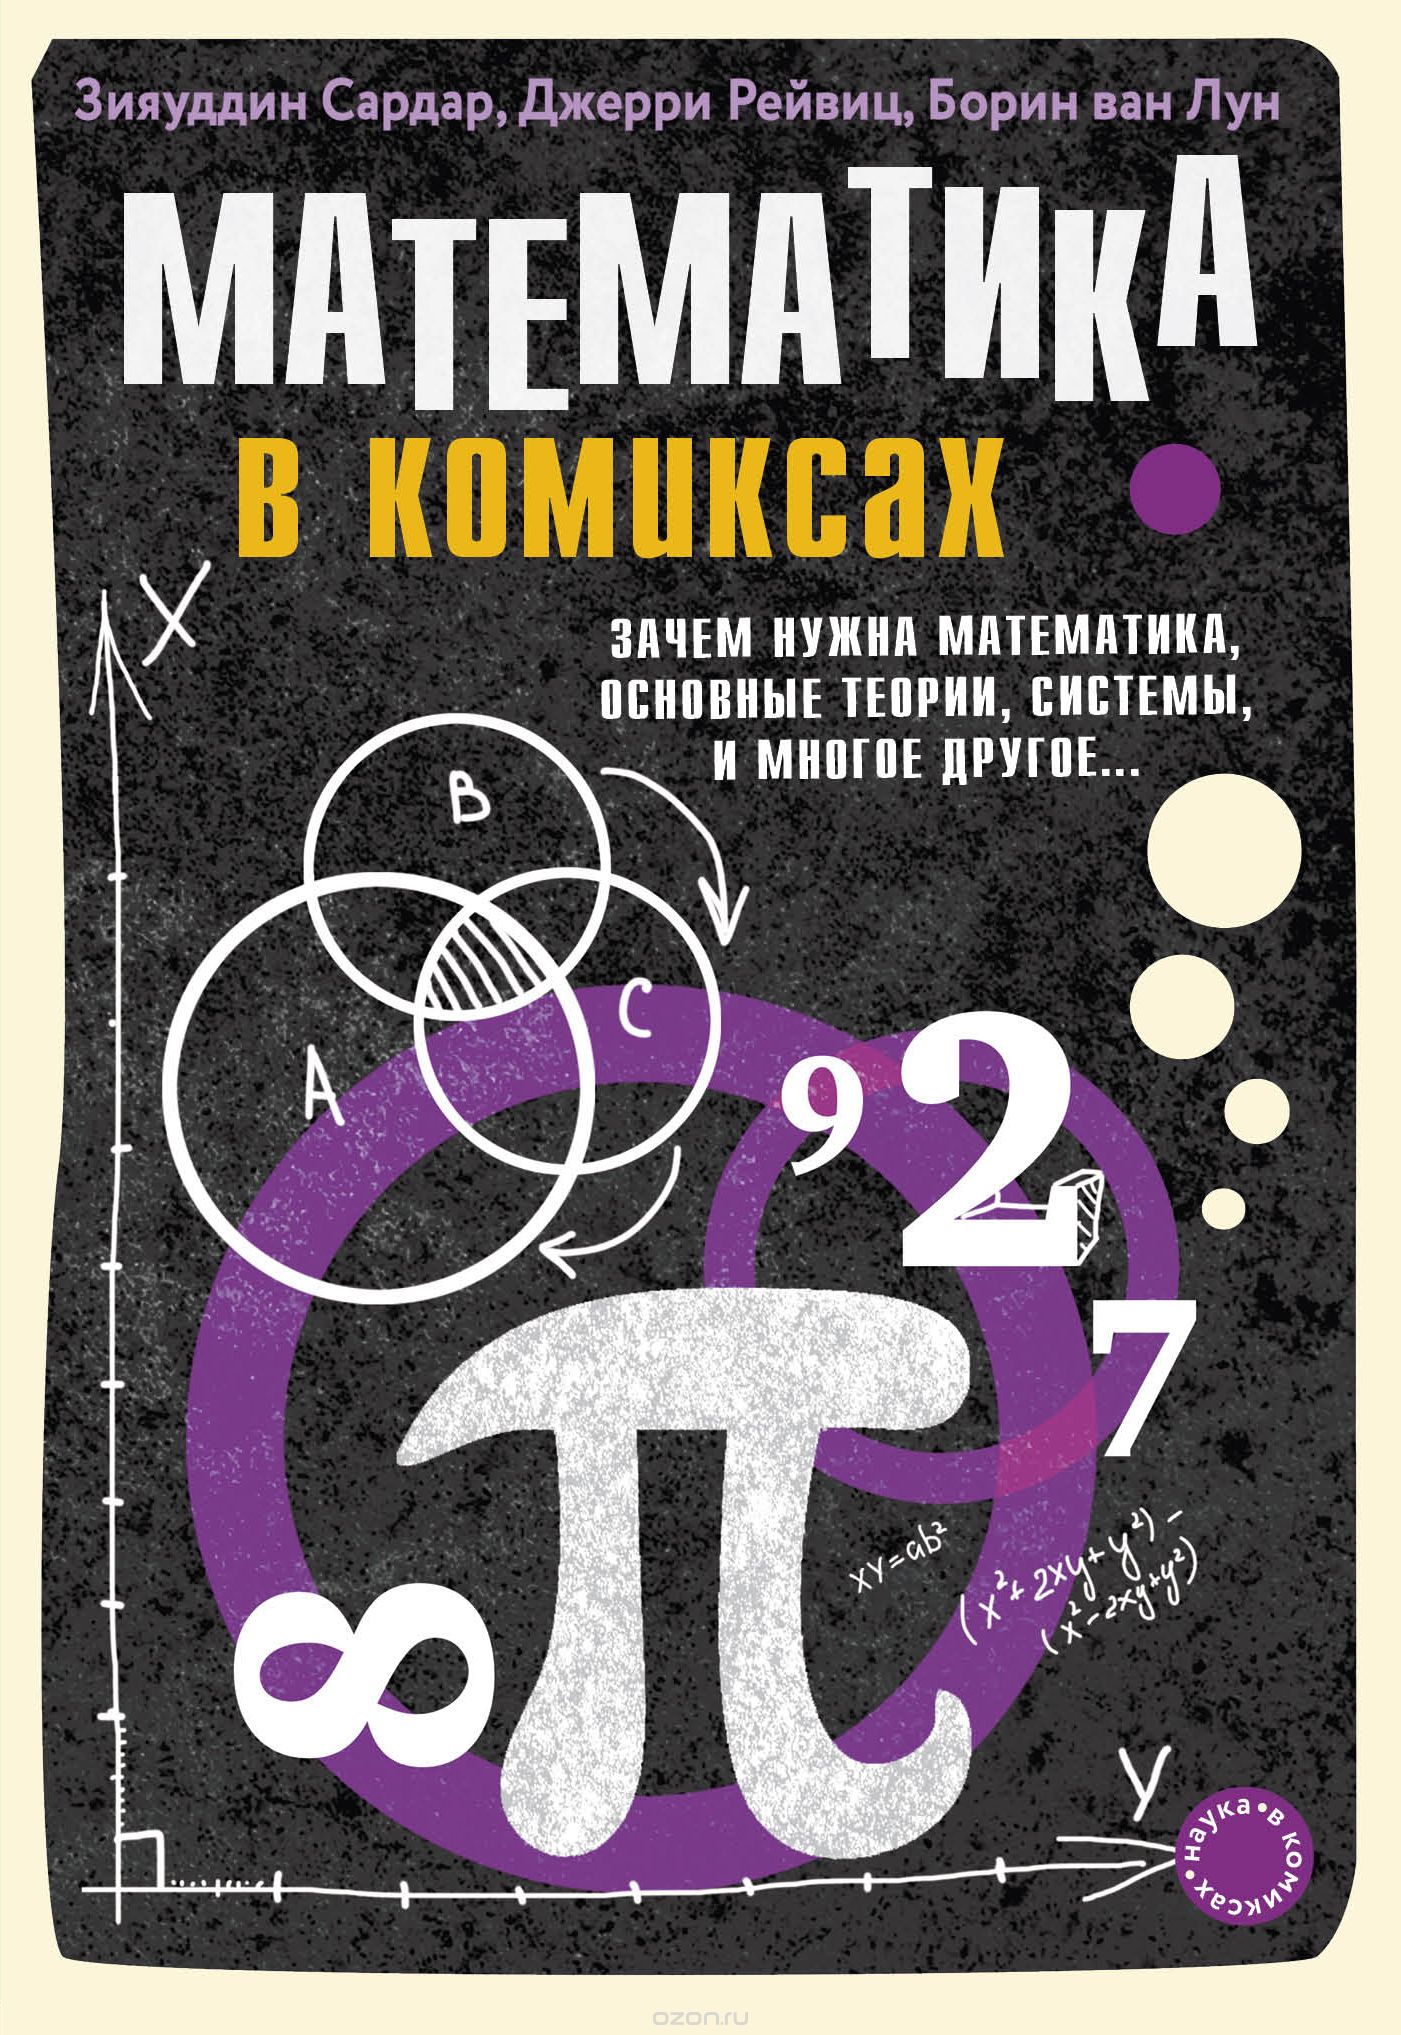 Комикс на русском языке «Математика в комиксах»